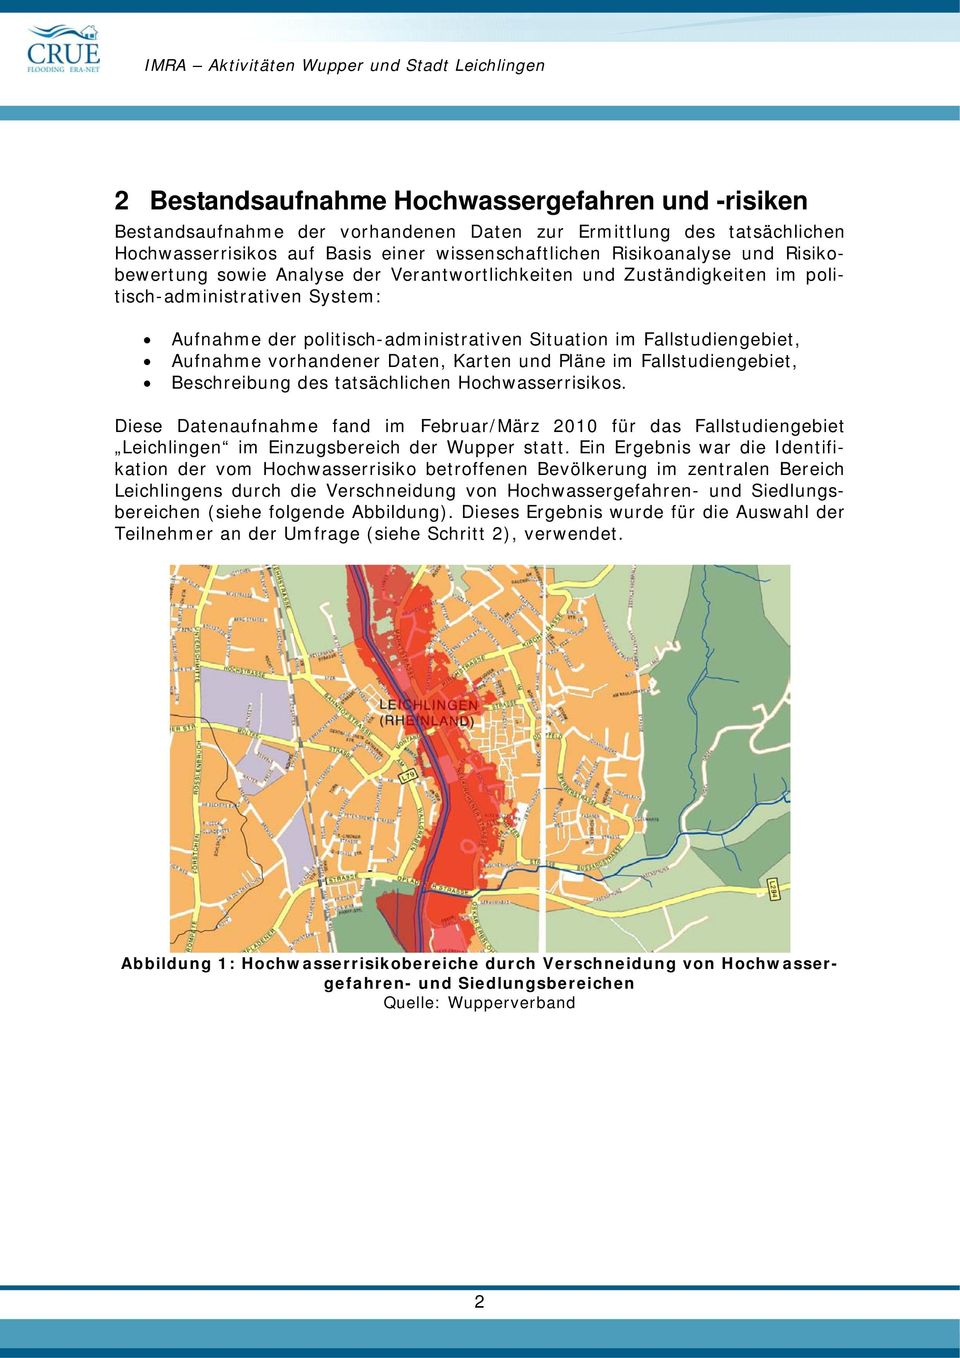 vorhandener Daten, Karten und Pläne im Fallstudiengebiet, Beschreibung des tatsächlichen Hochwasserrisikos.